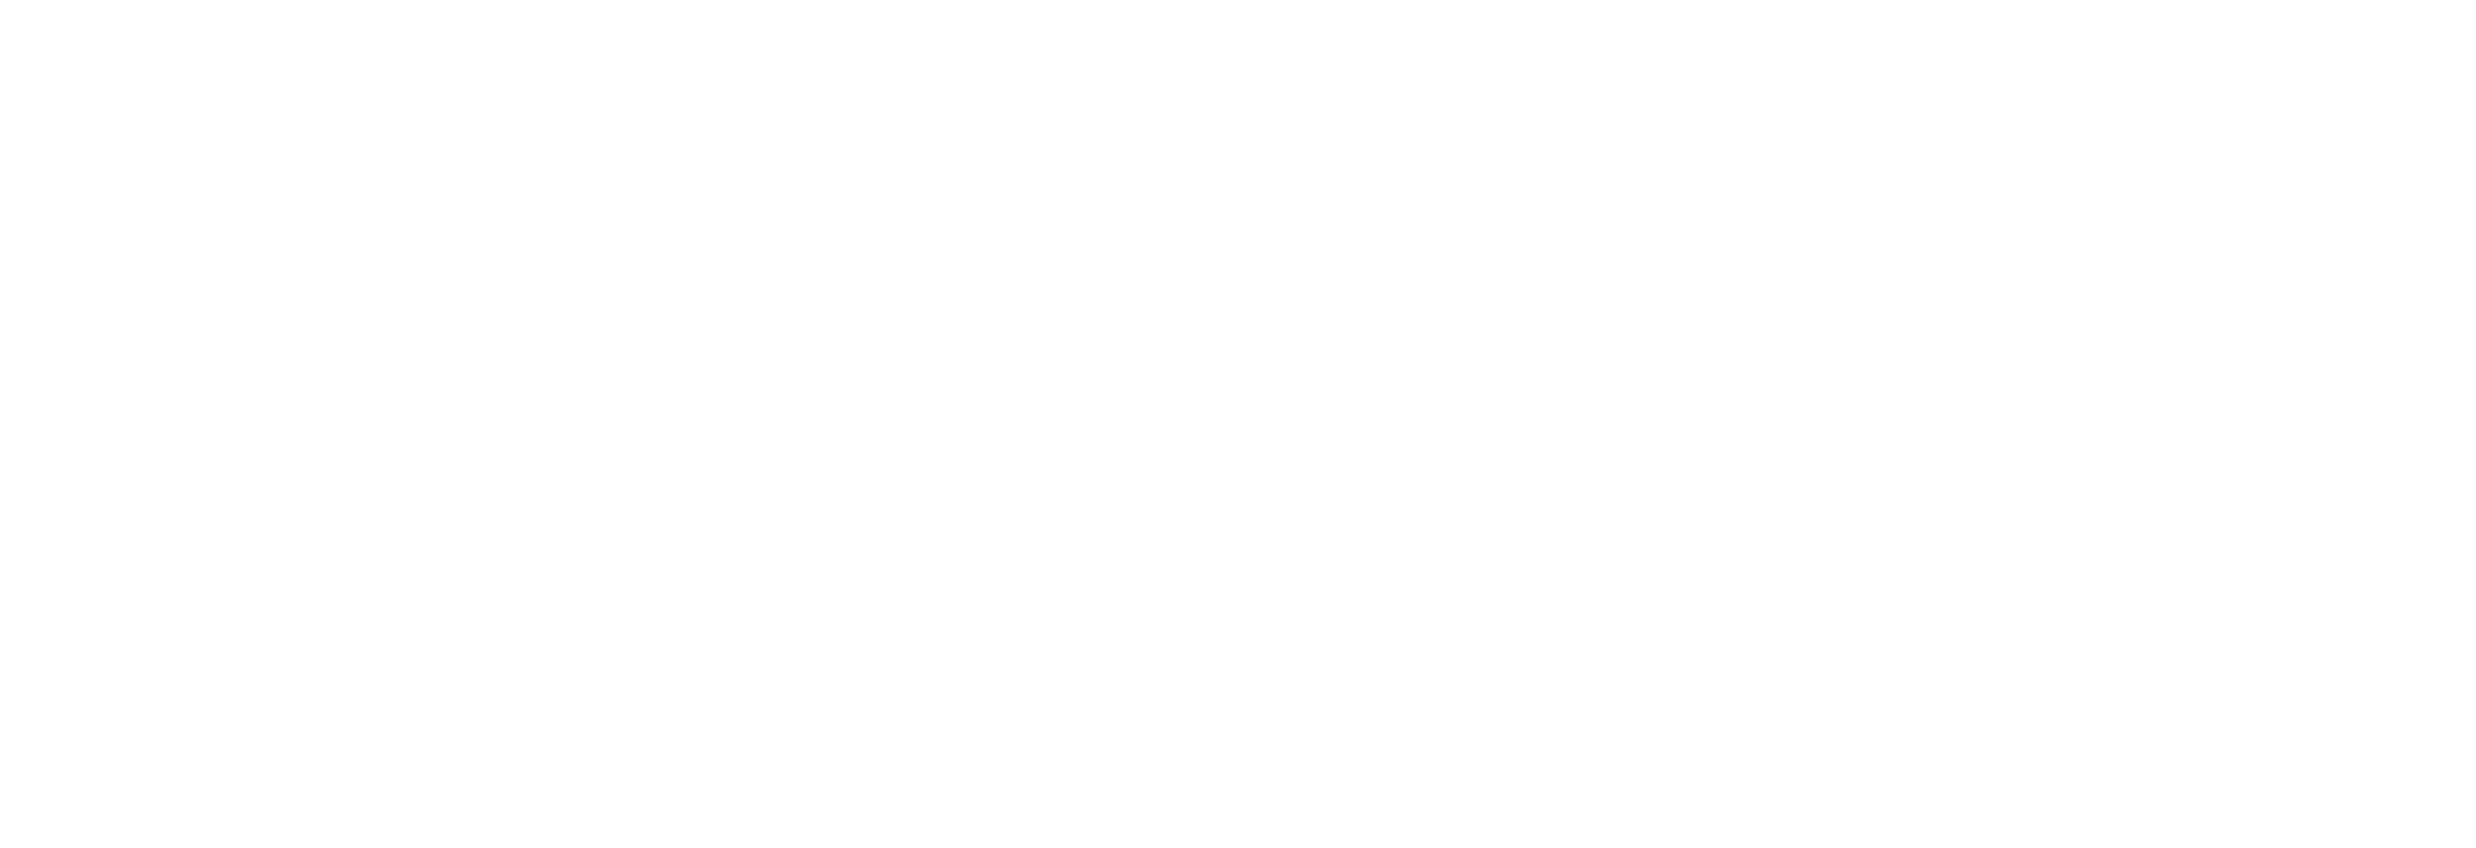 CICIS logo